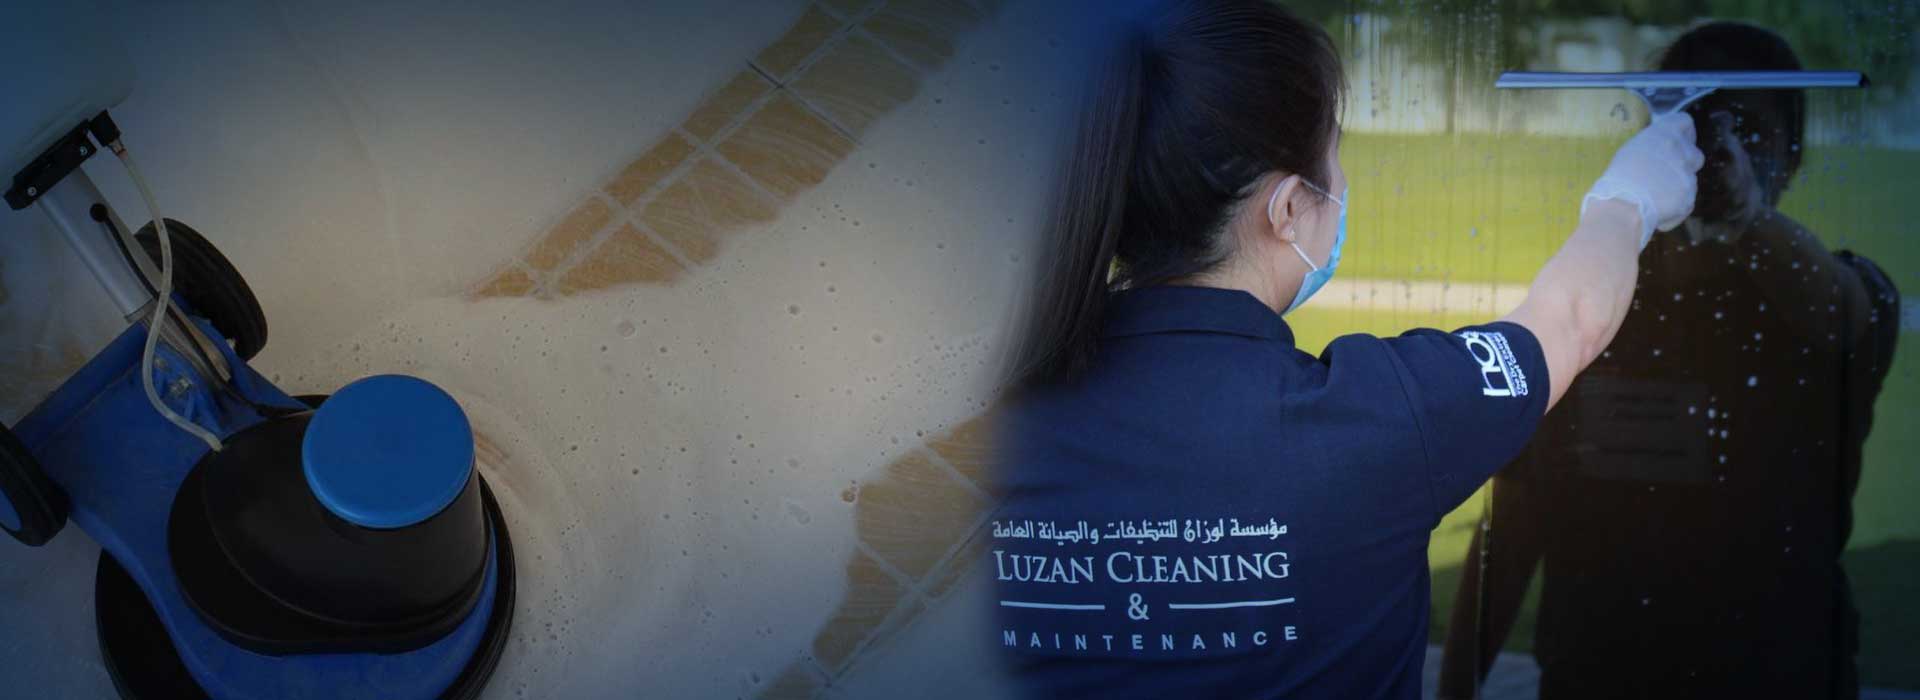 Luzan Cleaning & Maintenance